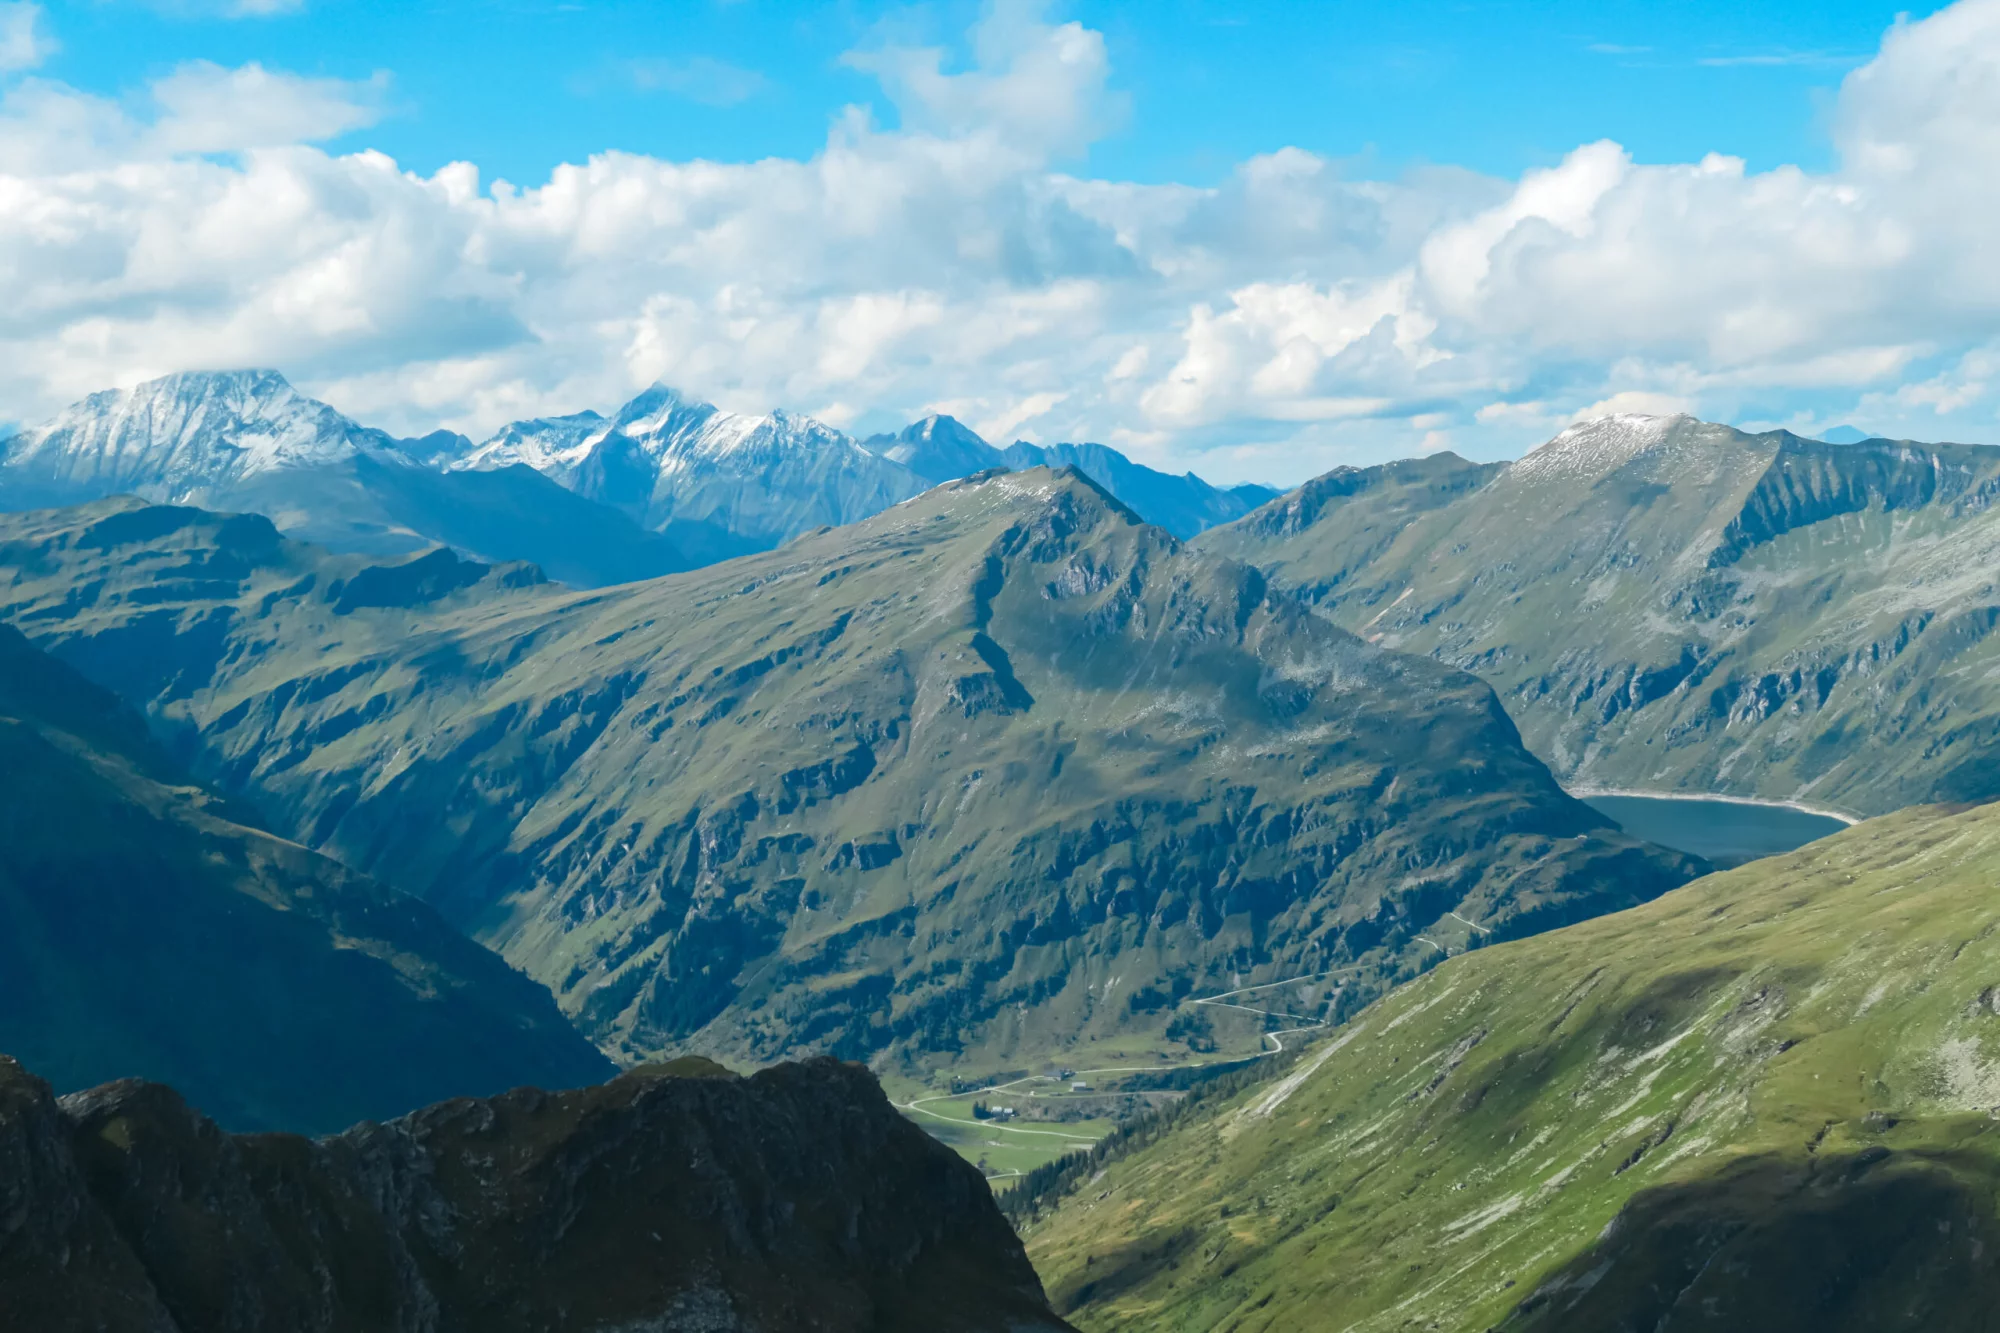 Vista panoramica delle maestose cime innevate del gruppo del Glockner nel Parco Nazionale degli Alti Tauri, Carinzia Salisburgo, Austria. Passeggiata nelle Alpi austriache. Vista dal monte Greilkopf. Evasione